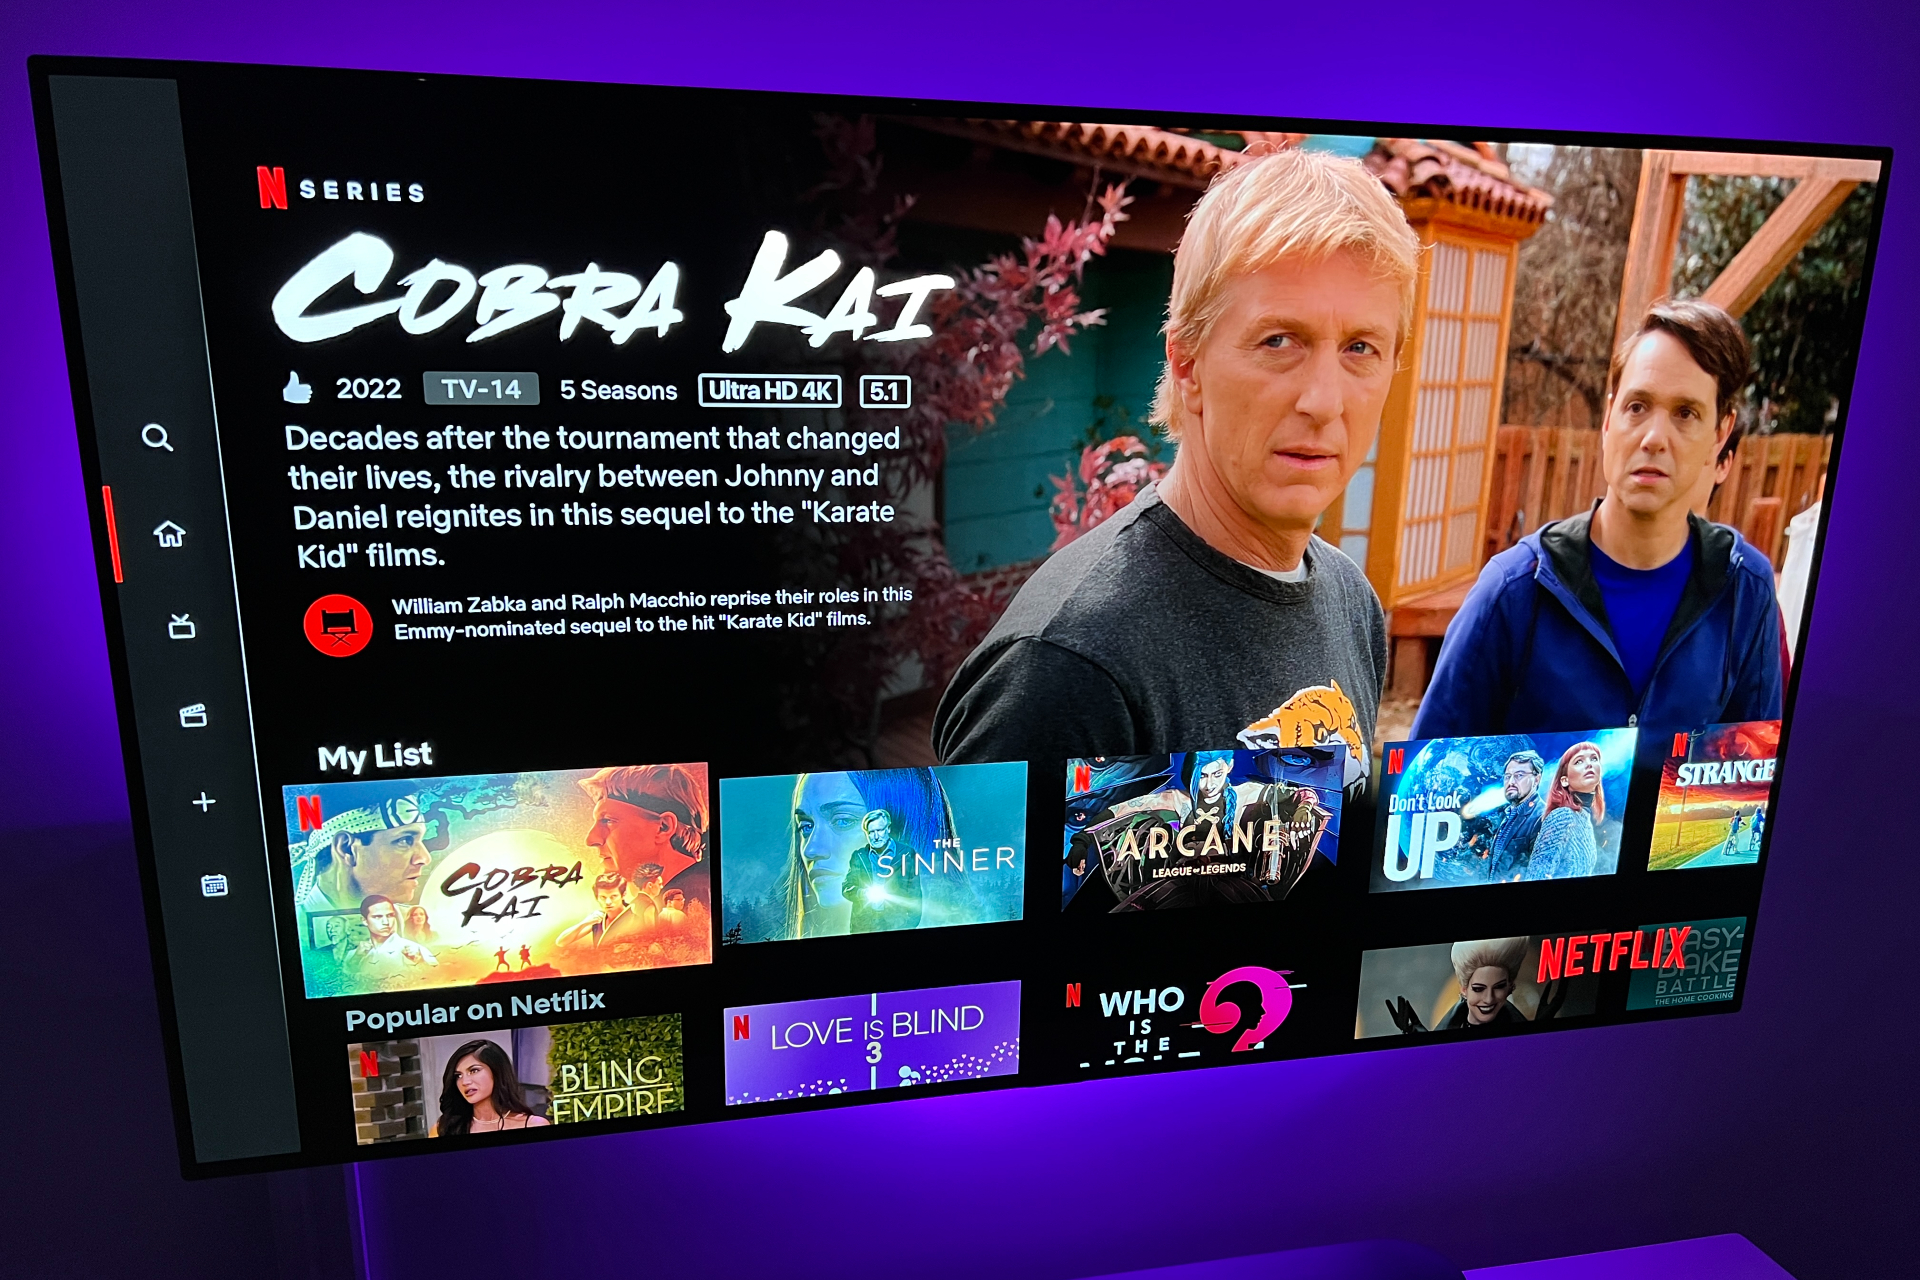 A tela inicial da Netflix com Cobra Kai.